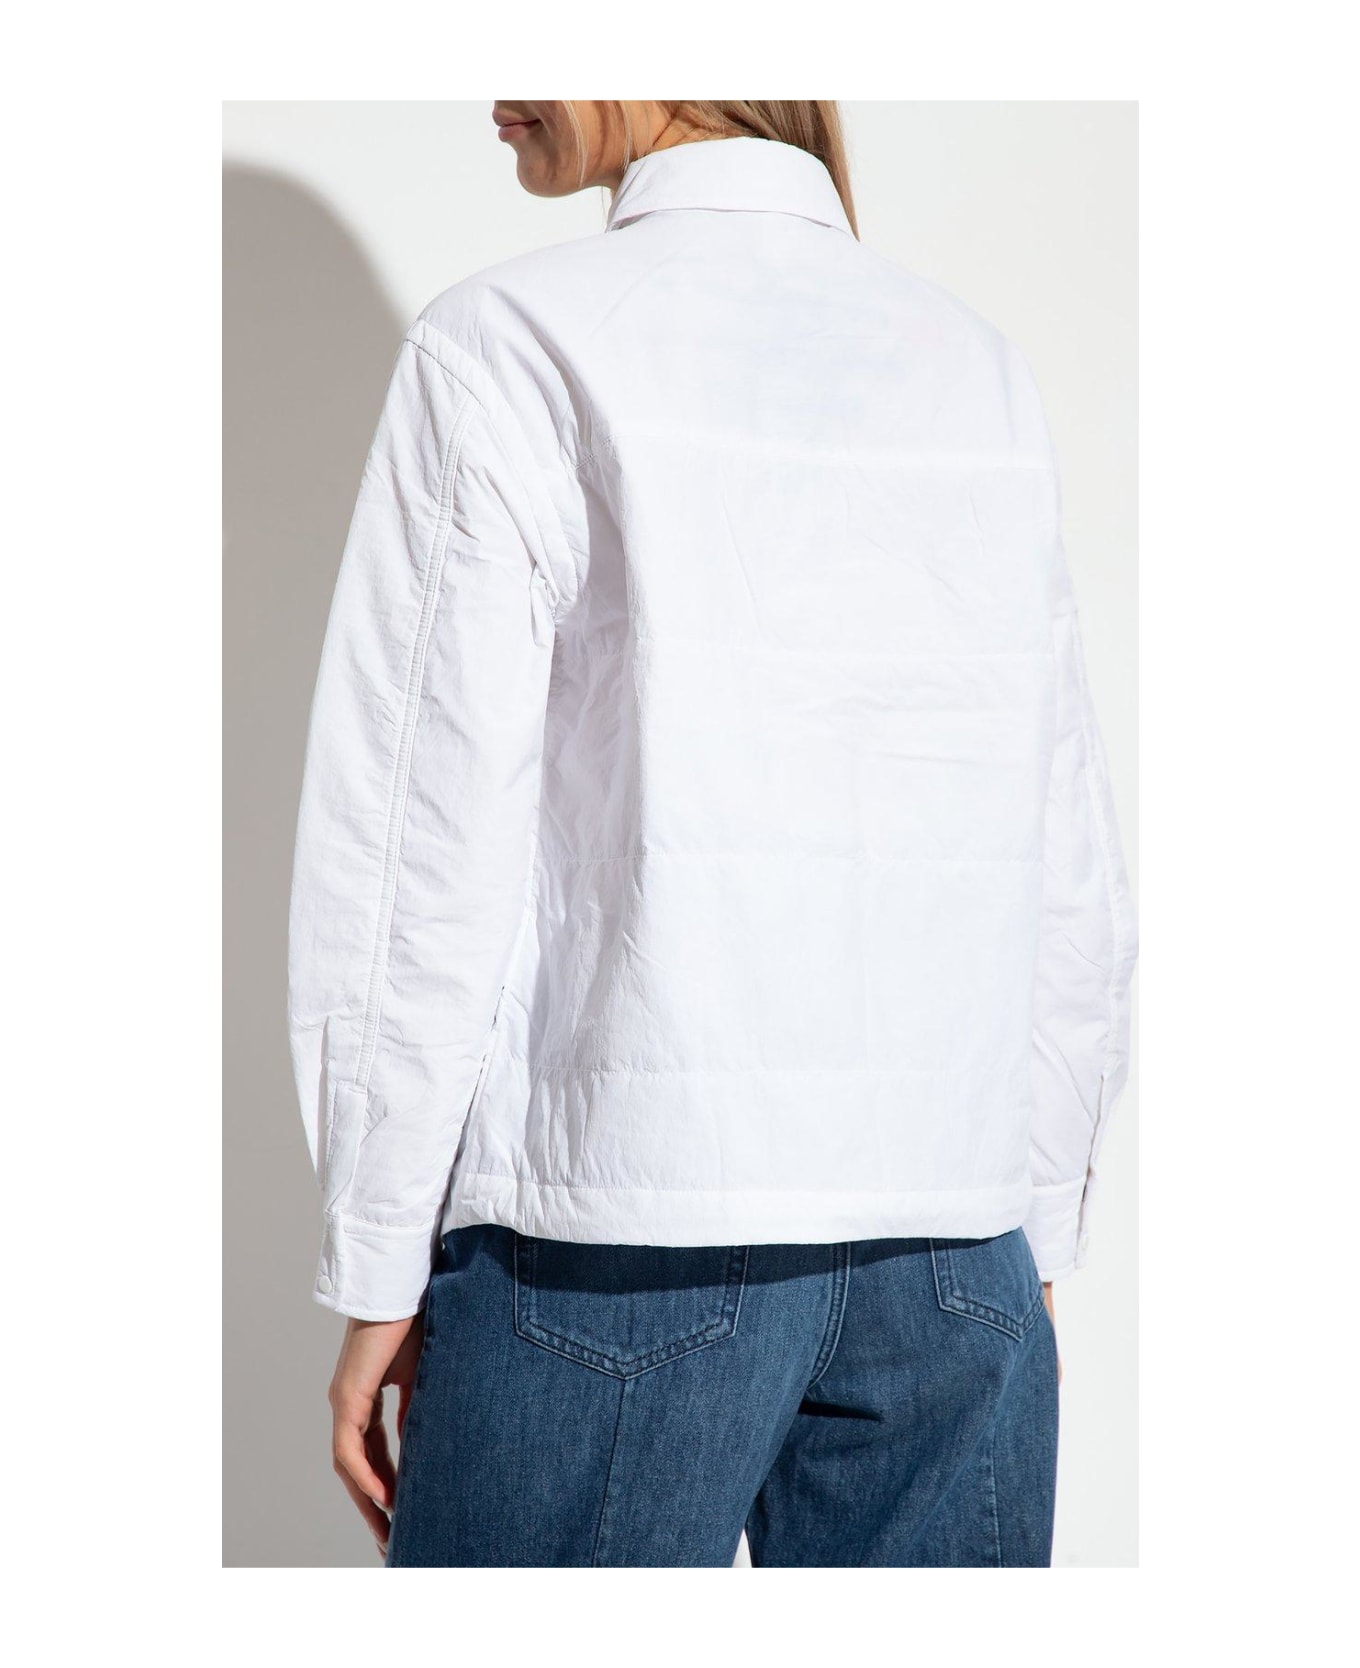 Emporio Armani Shirt Jacket - Bianco